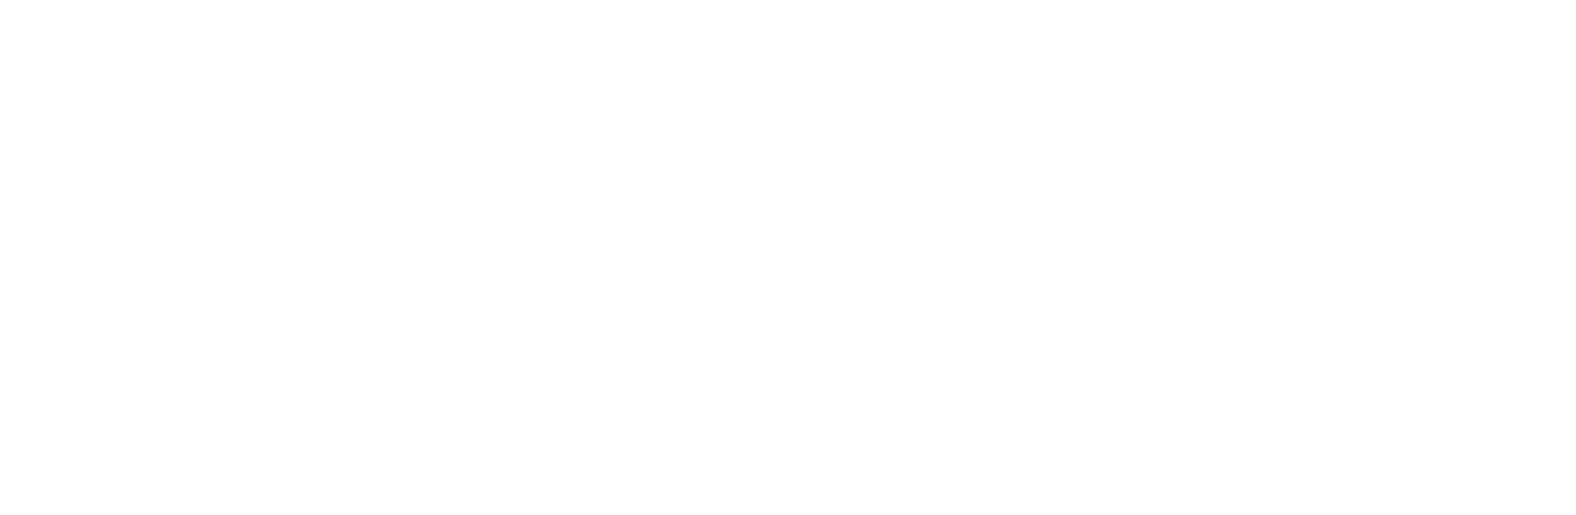 Svenska Cellulosa Aktiebolaget (SCA) logo large for dark backgrounds (transparent PNG)